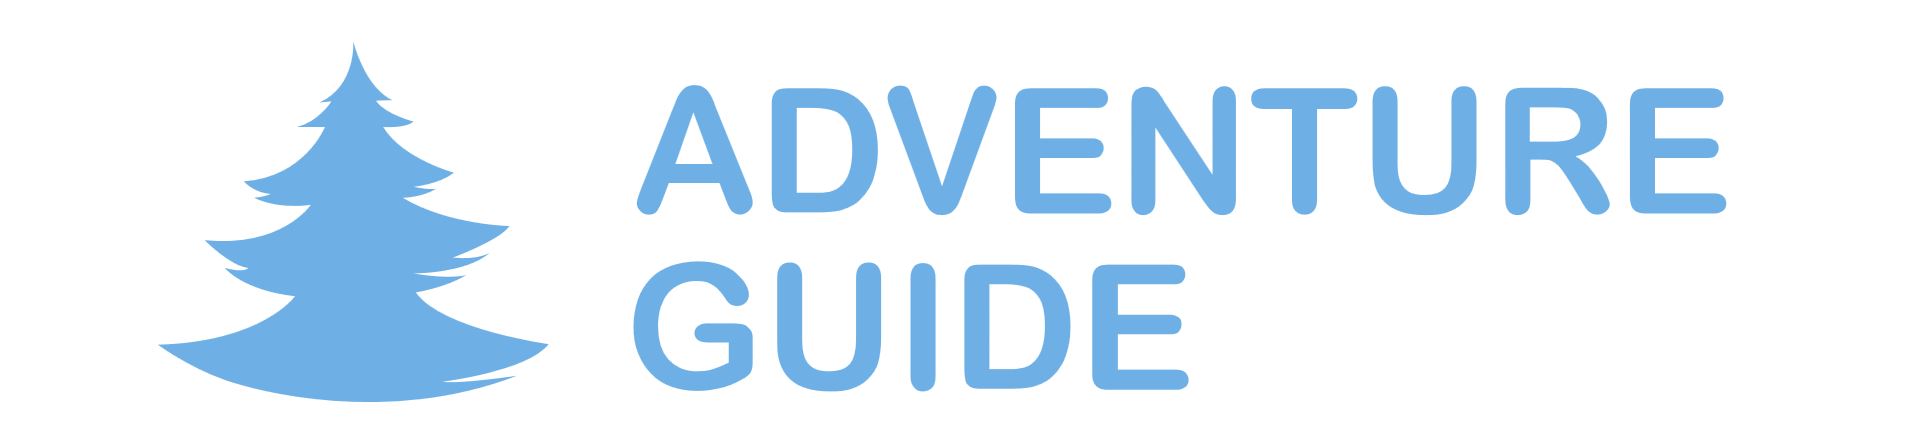 Www adventures. Adventure Guide. Adventure Guide логотип. Adventure Guide туроператор. ООО "Адвенче".